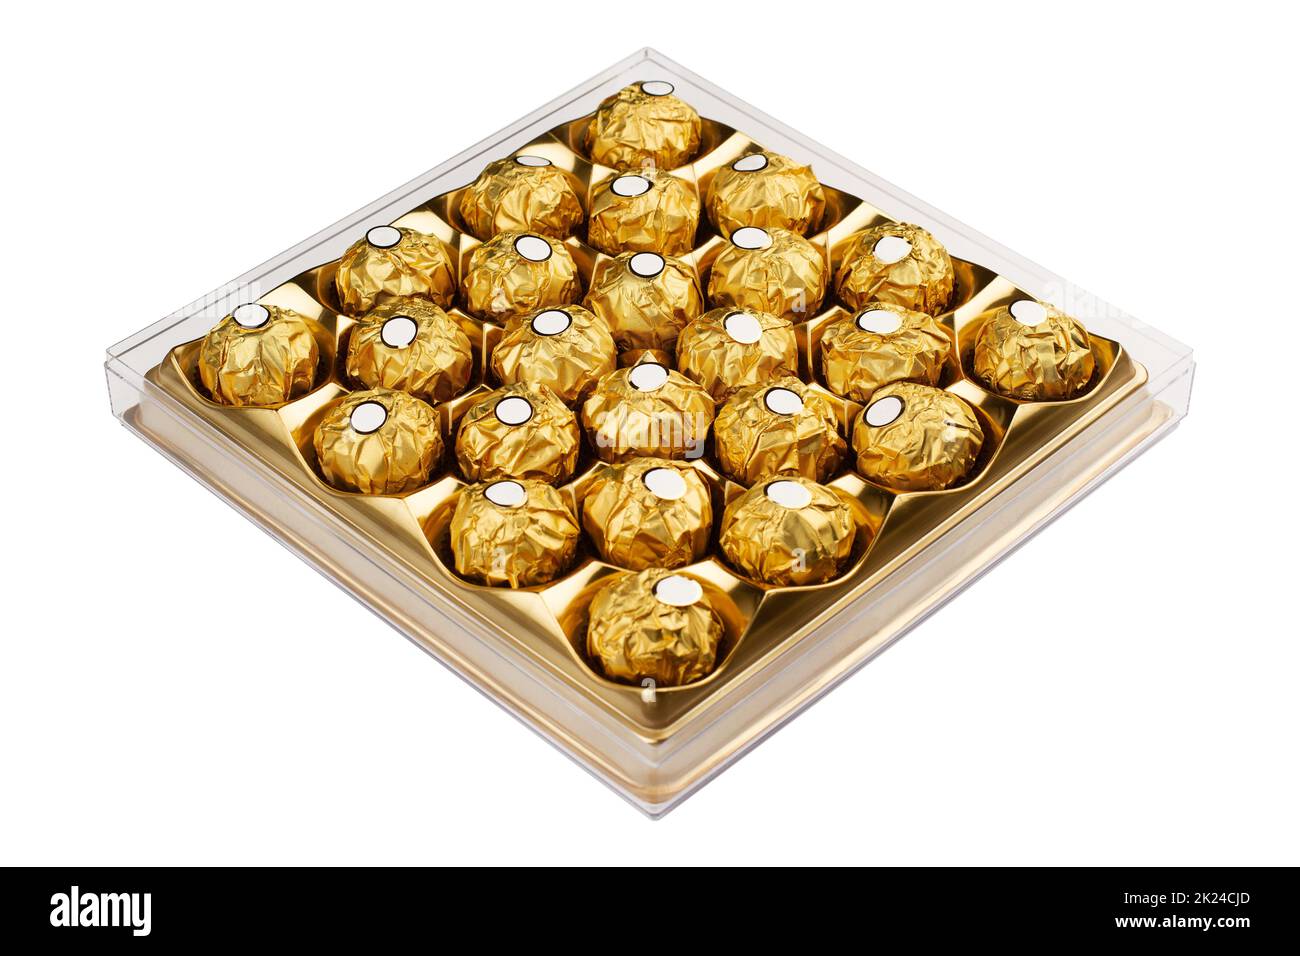 vista prospettica della scatola da dessert dolce quadrata con molte caramelle al cioccolato rotonde in confezione d'oro isolata su sfondo bianco Foto Stock